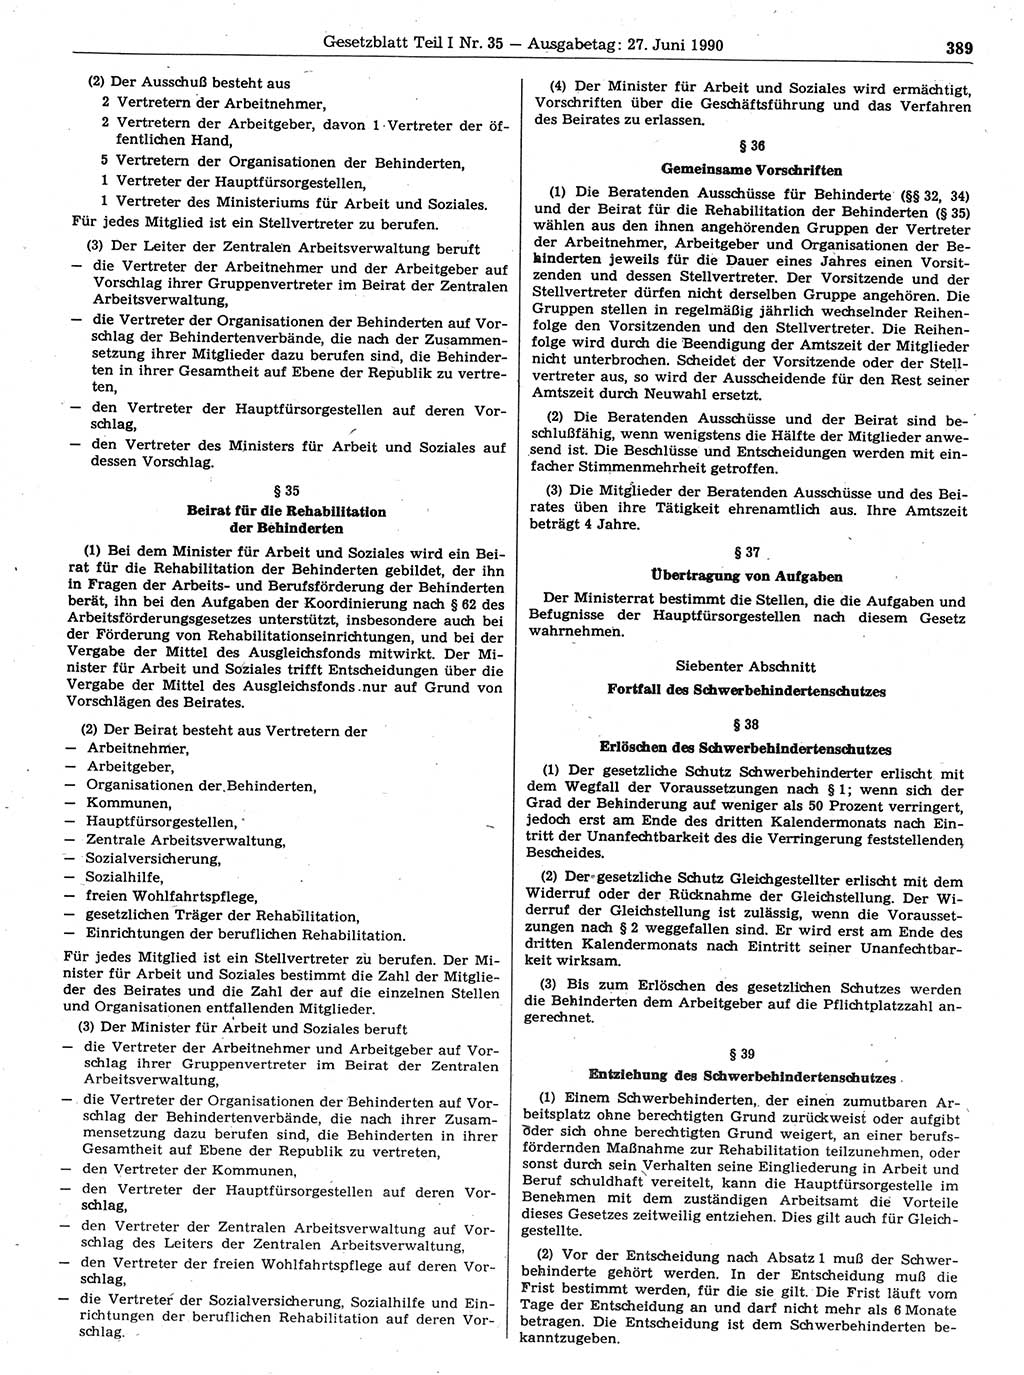 Gesetzblatt (GBl.) der Deutschen Demokratischen Republik (DDR) Teil Ⅰ 1990, Seite 389 (GBl. DDR Ⅰ 1990, S. 389)